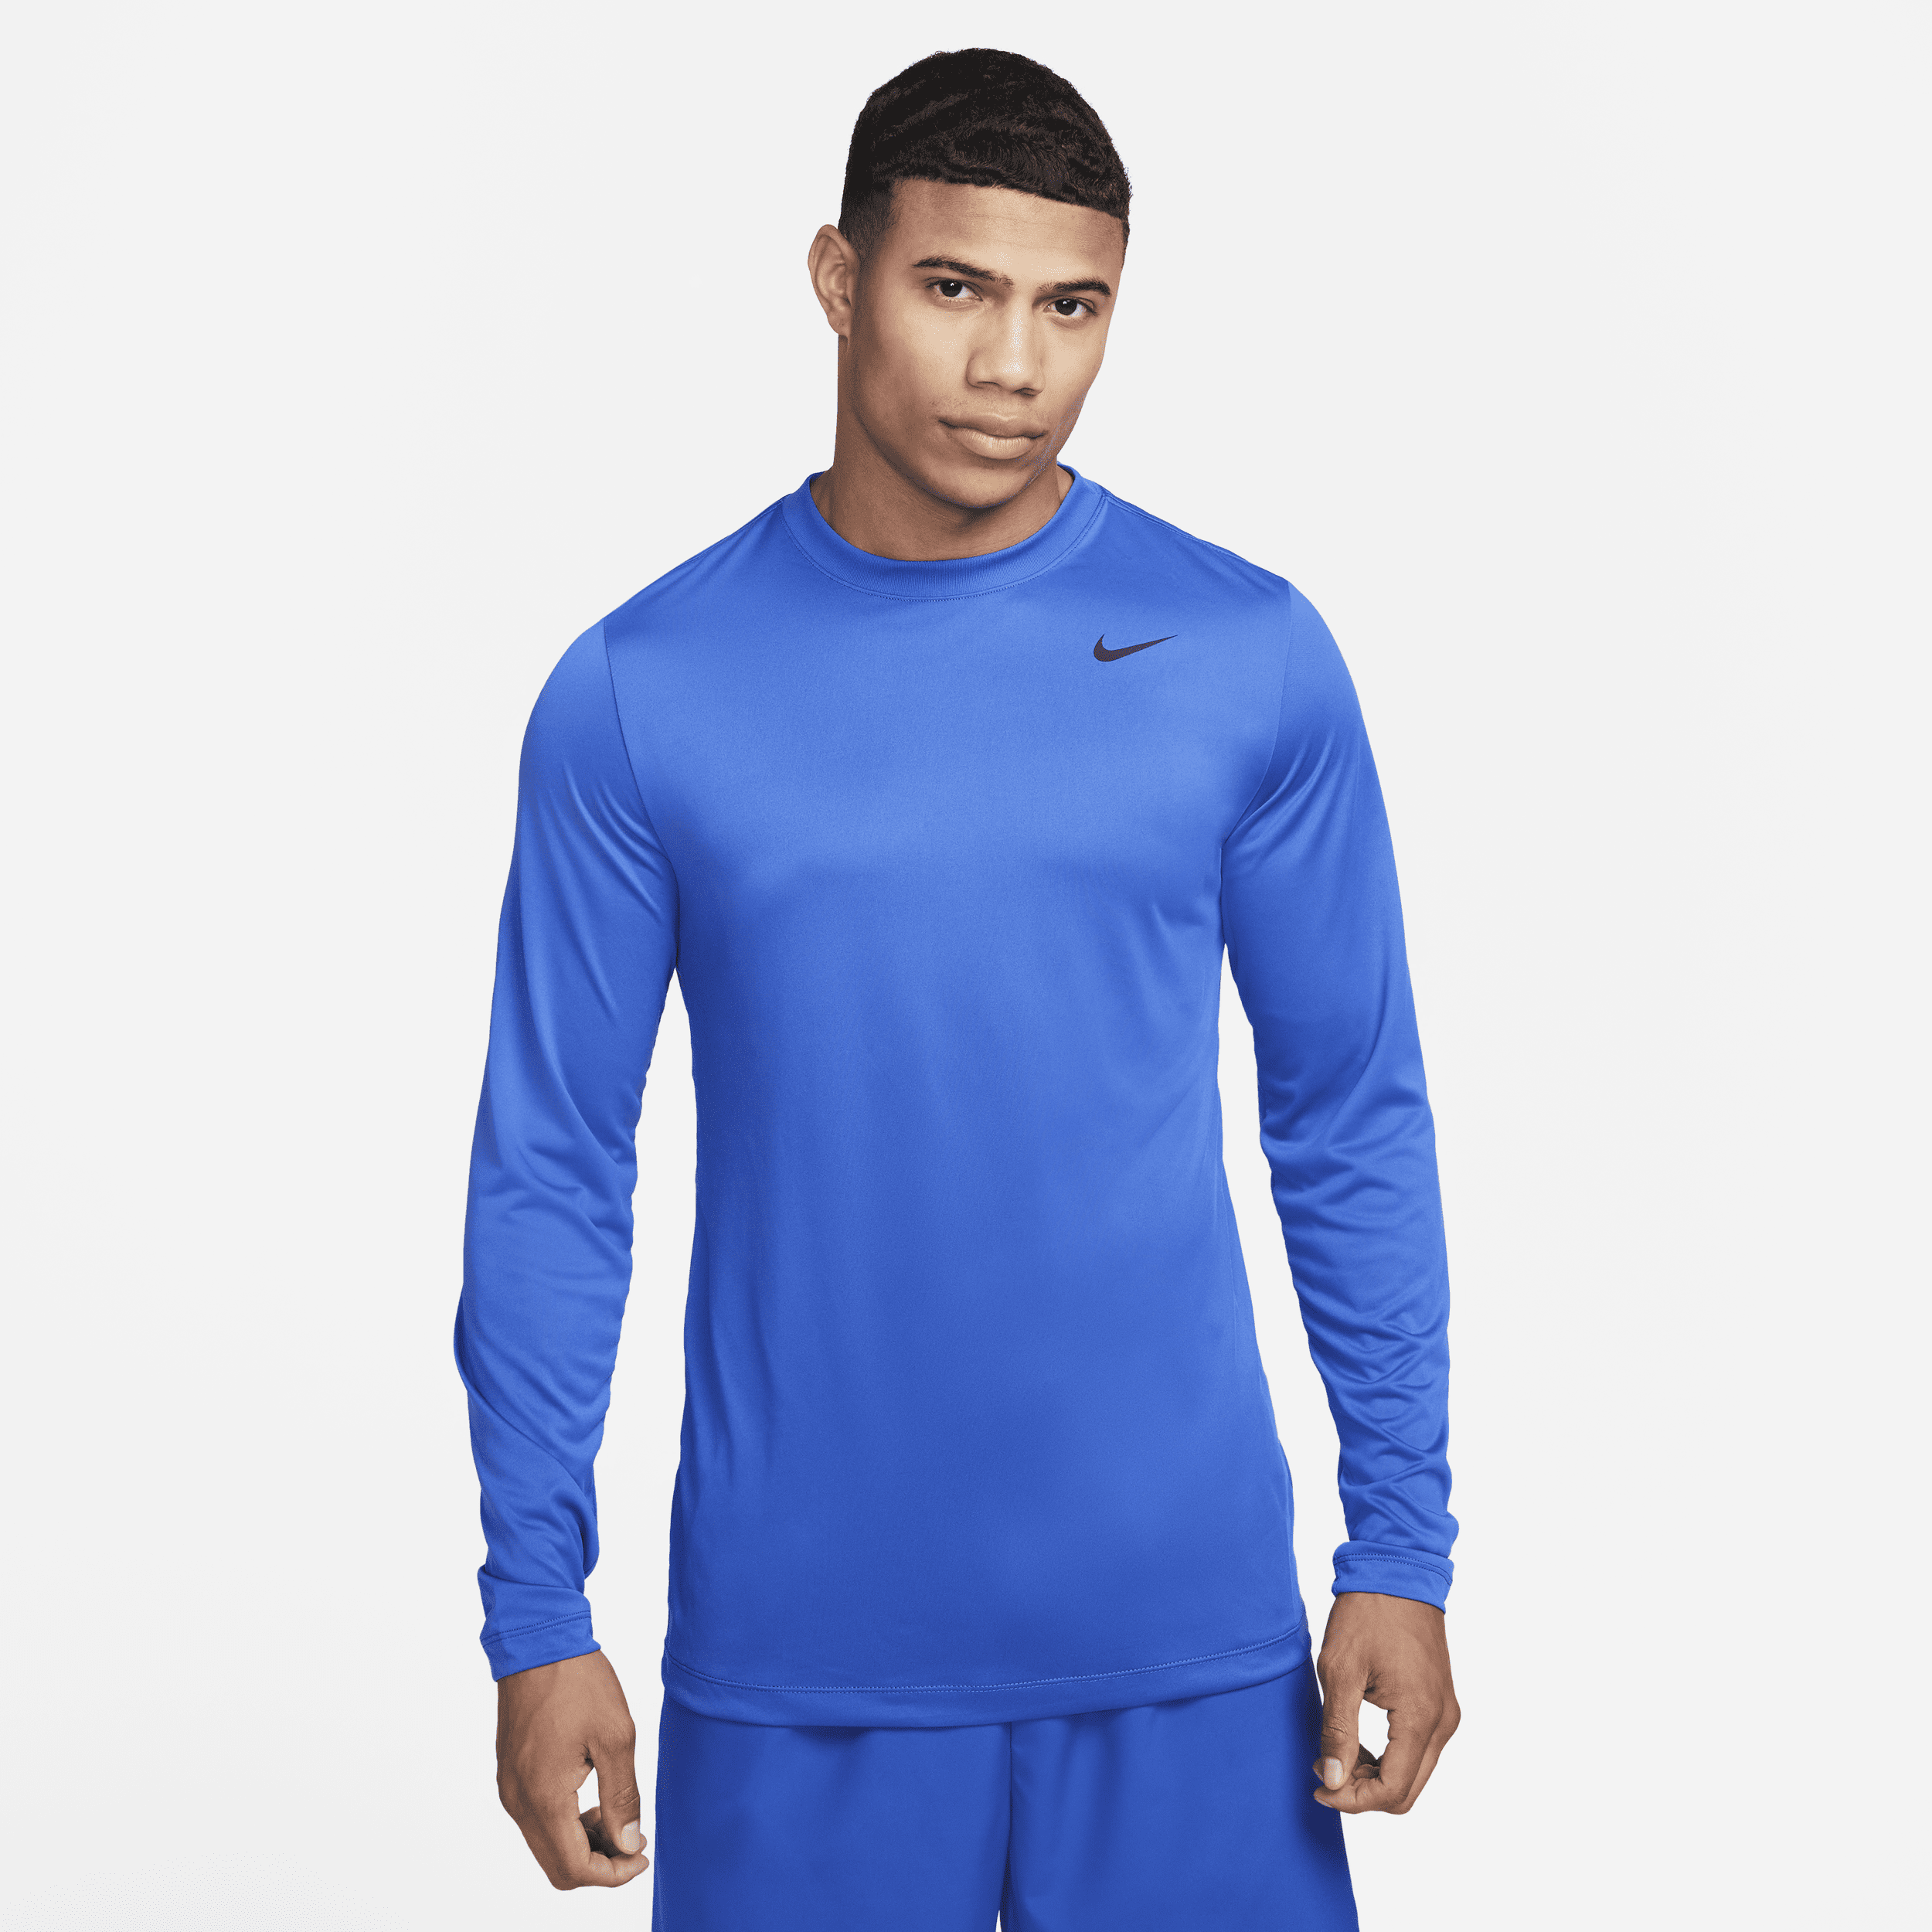 Nike Men's Dri-fit Legend Long-sleeve Fitness Top In Blue